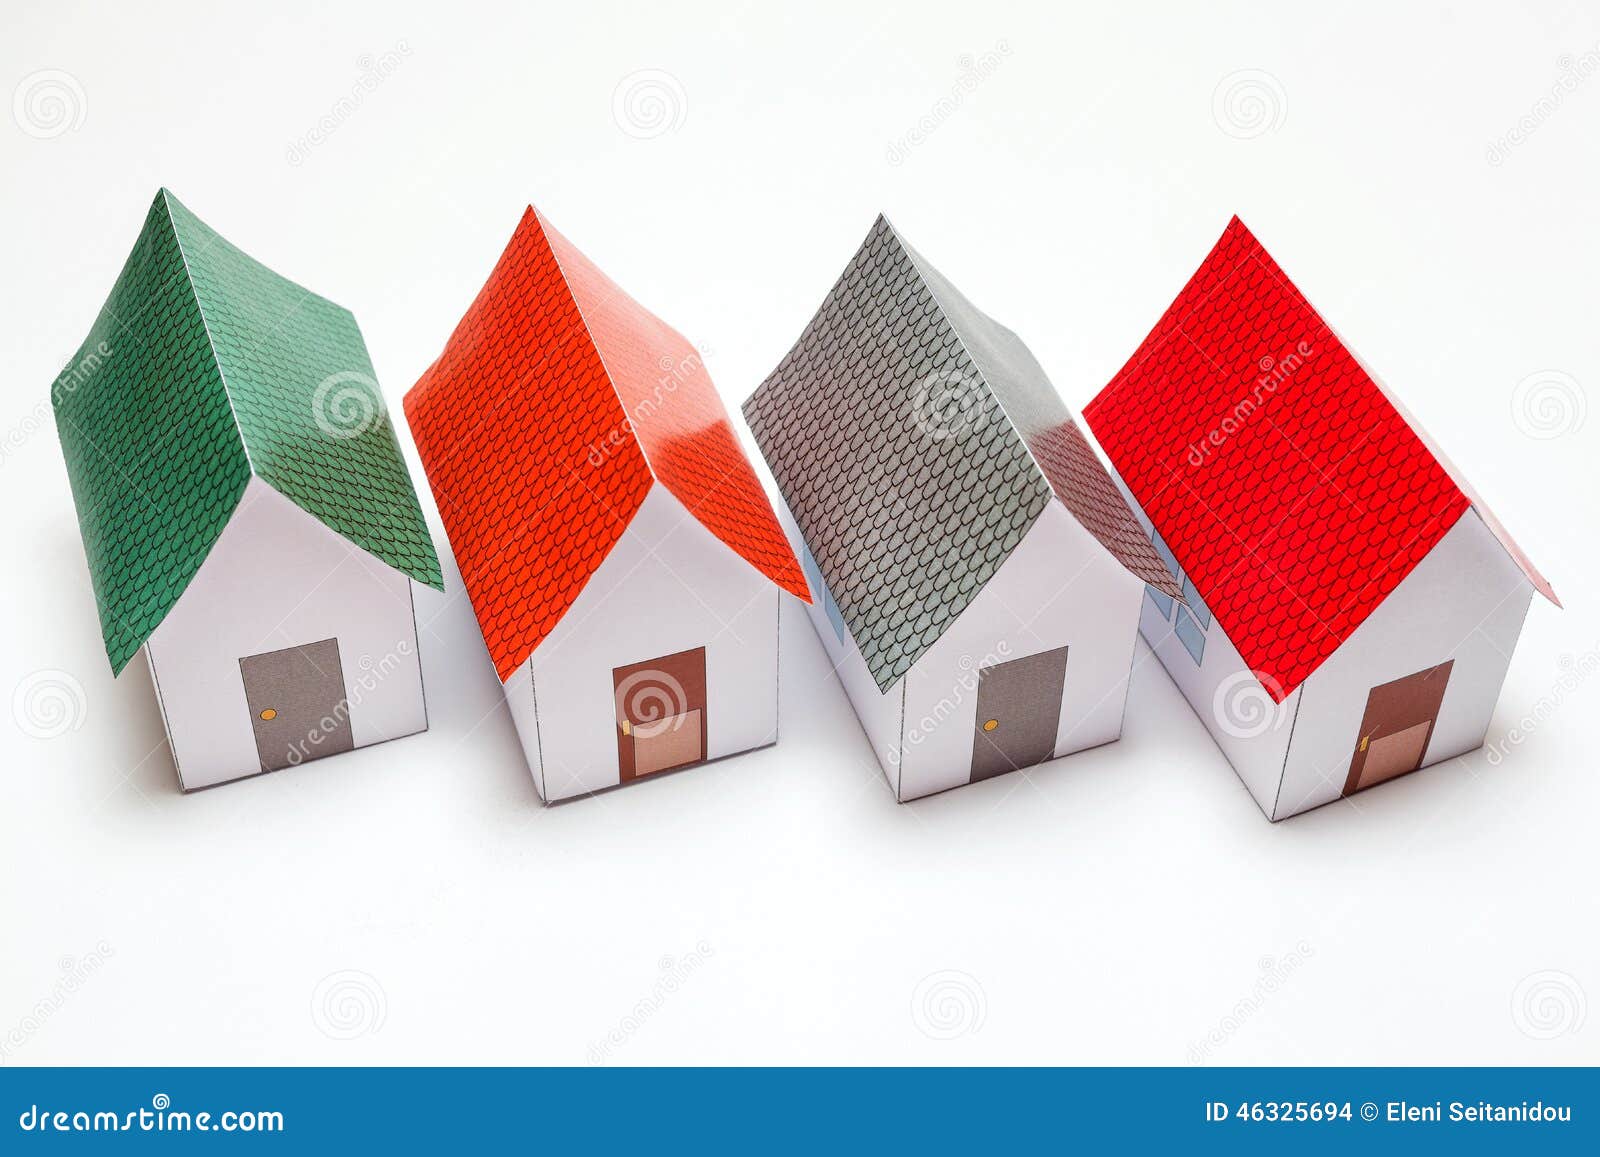 Бумаг строй. Паперкрафт домик. Паперкрафт домики из бумаги. Маленький дом паперкрафт из бумаги. Цветные паперкрафт дома.